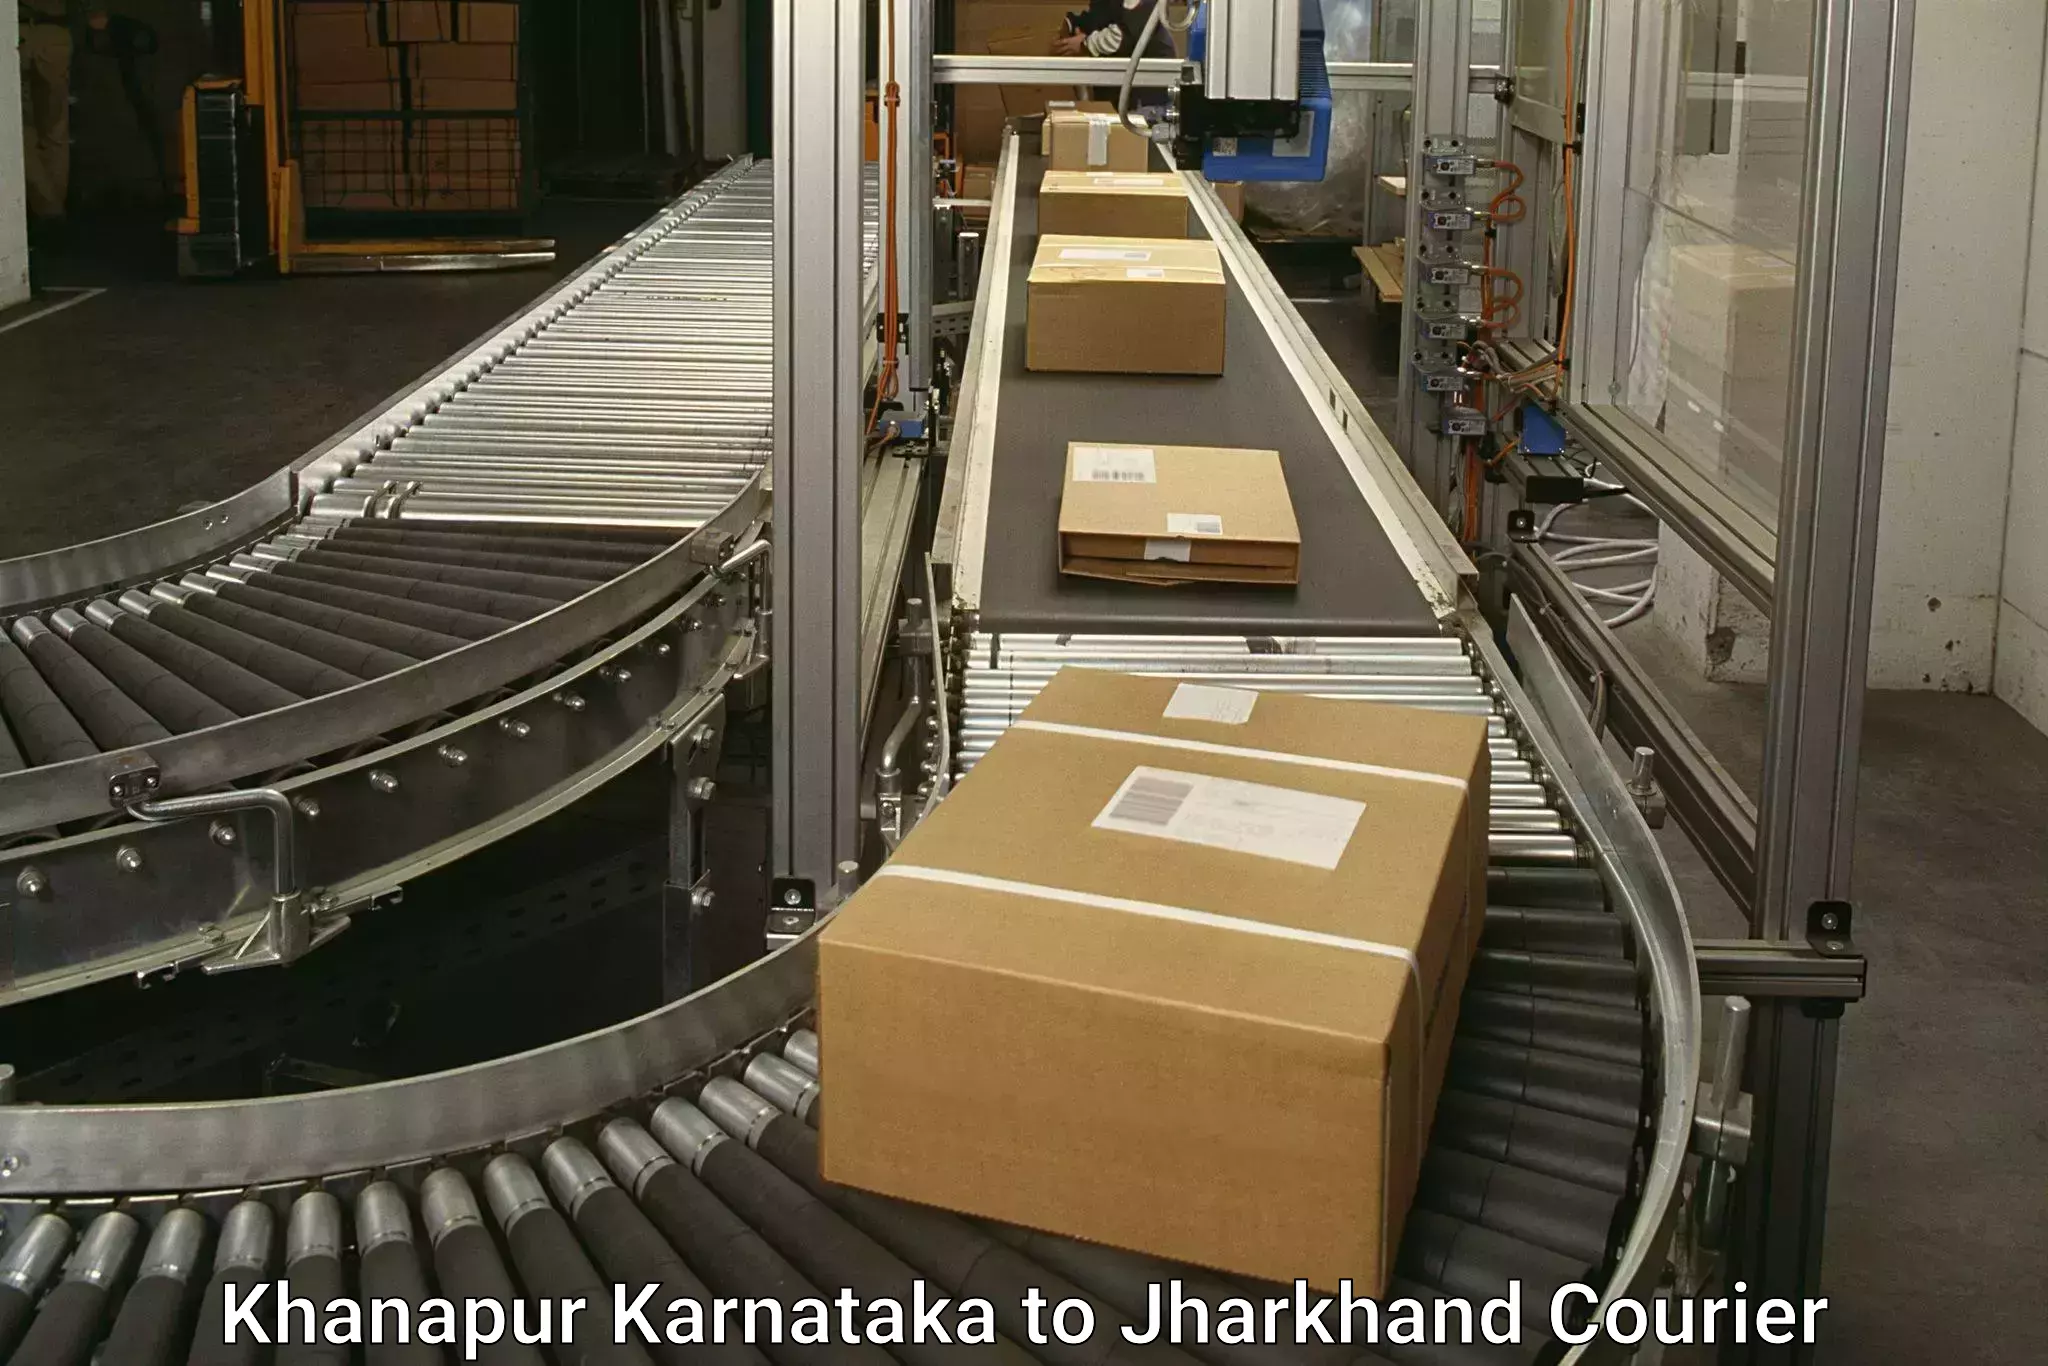 High-priority parcel service Khanapur Karnataka to Lohardaga